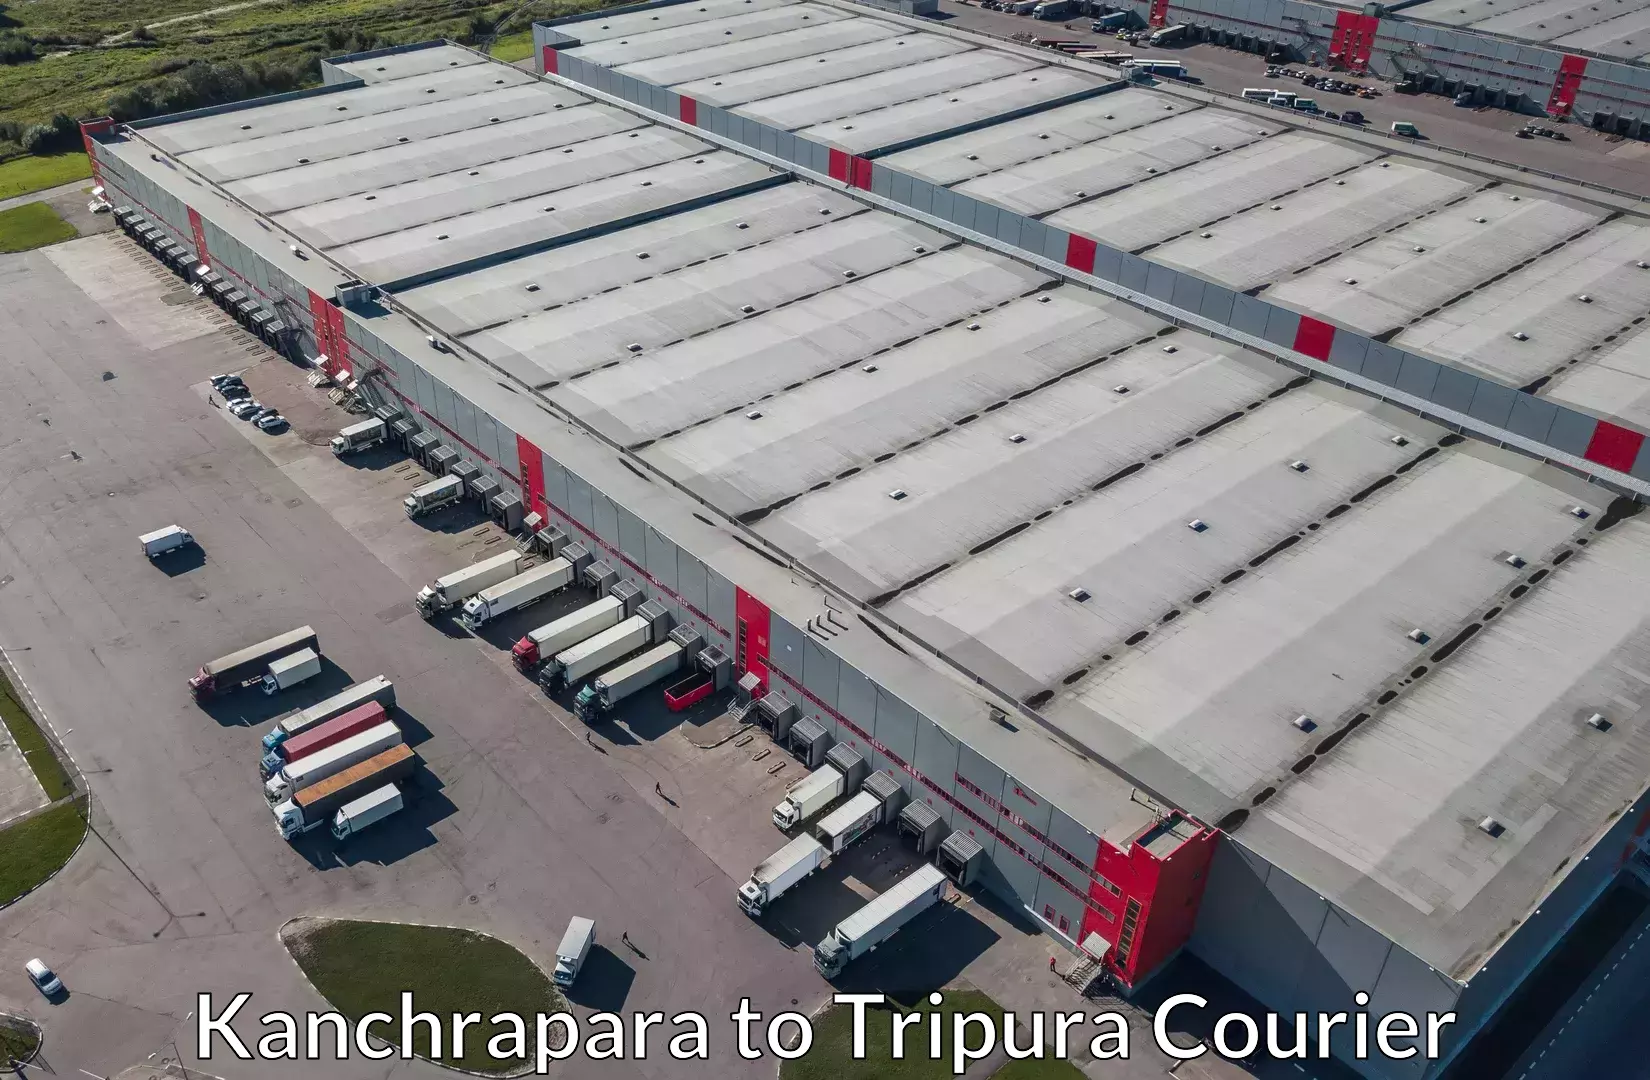 Luggage transport deals Kanchrapara to Amarpur